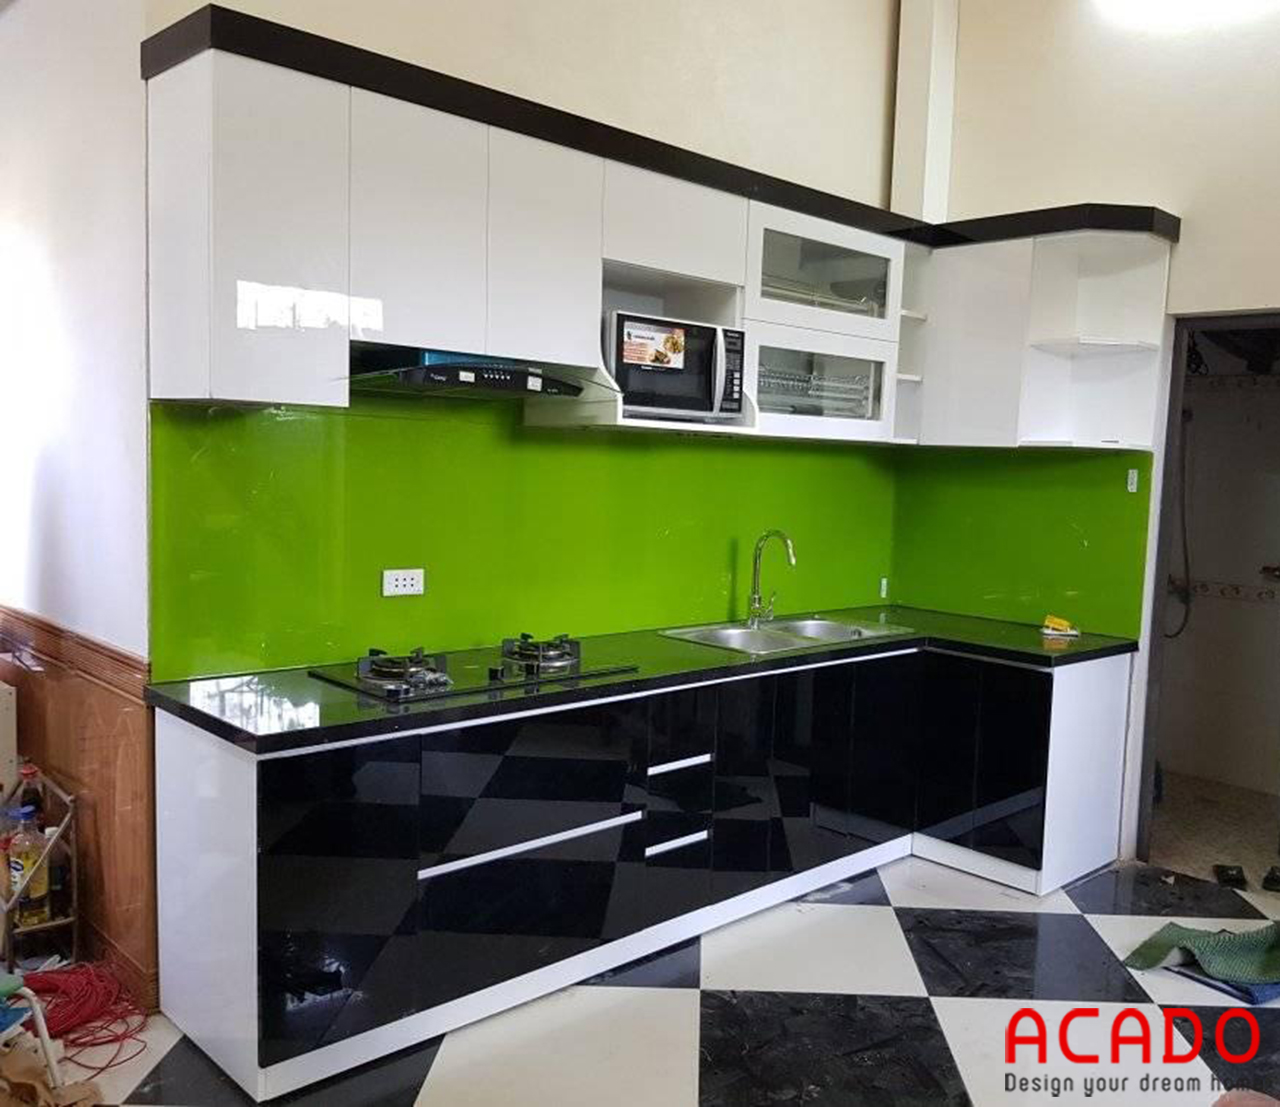 Tủ bếp Acrylic màu trắng đen mang đến vẻ đẹp hiện đại, sang trọng cho không gian bếp